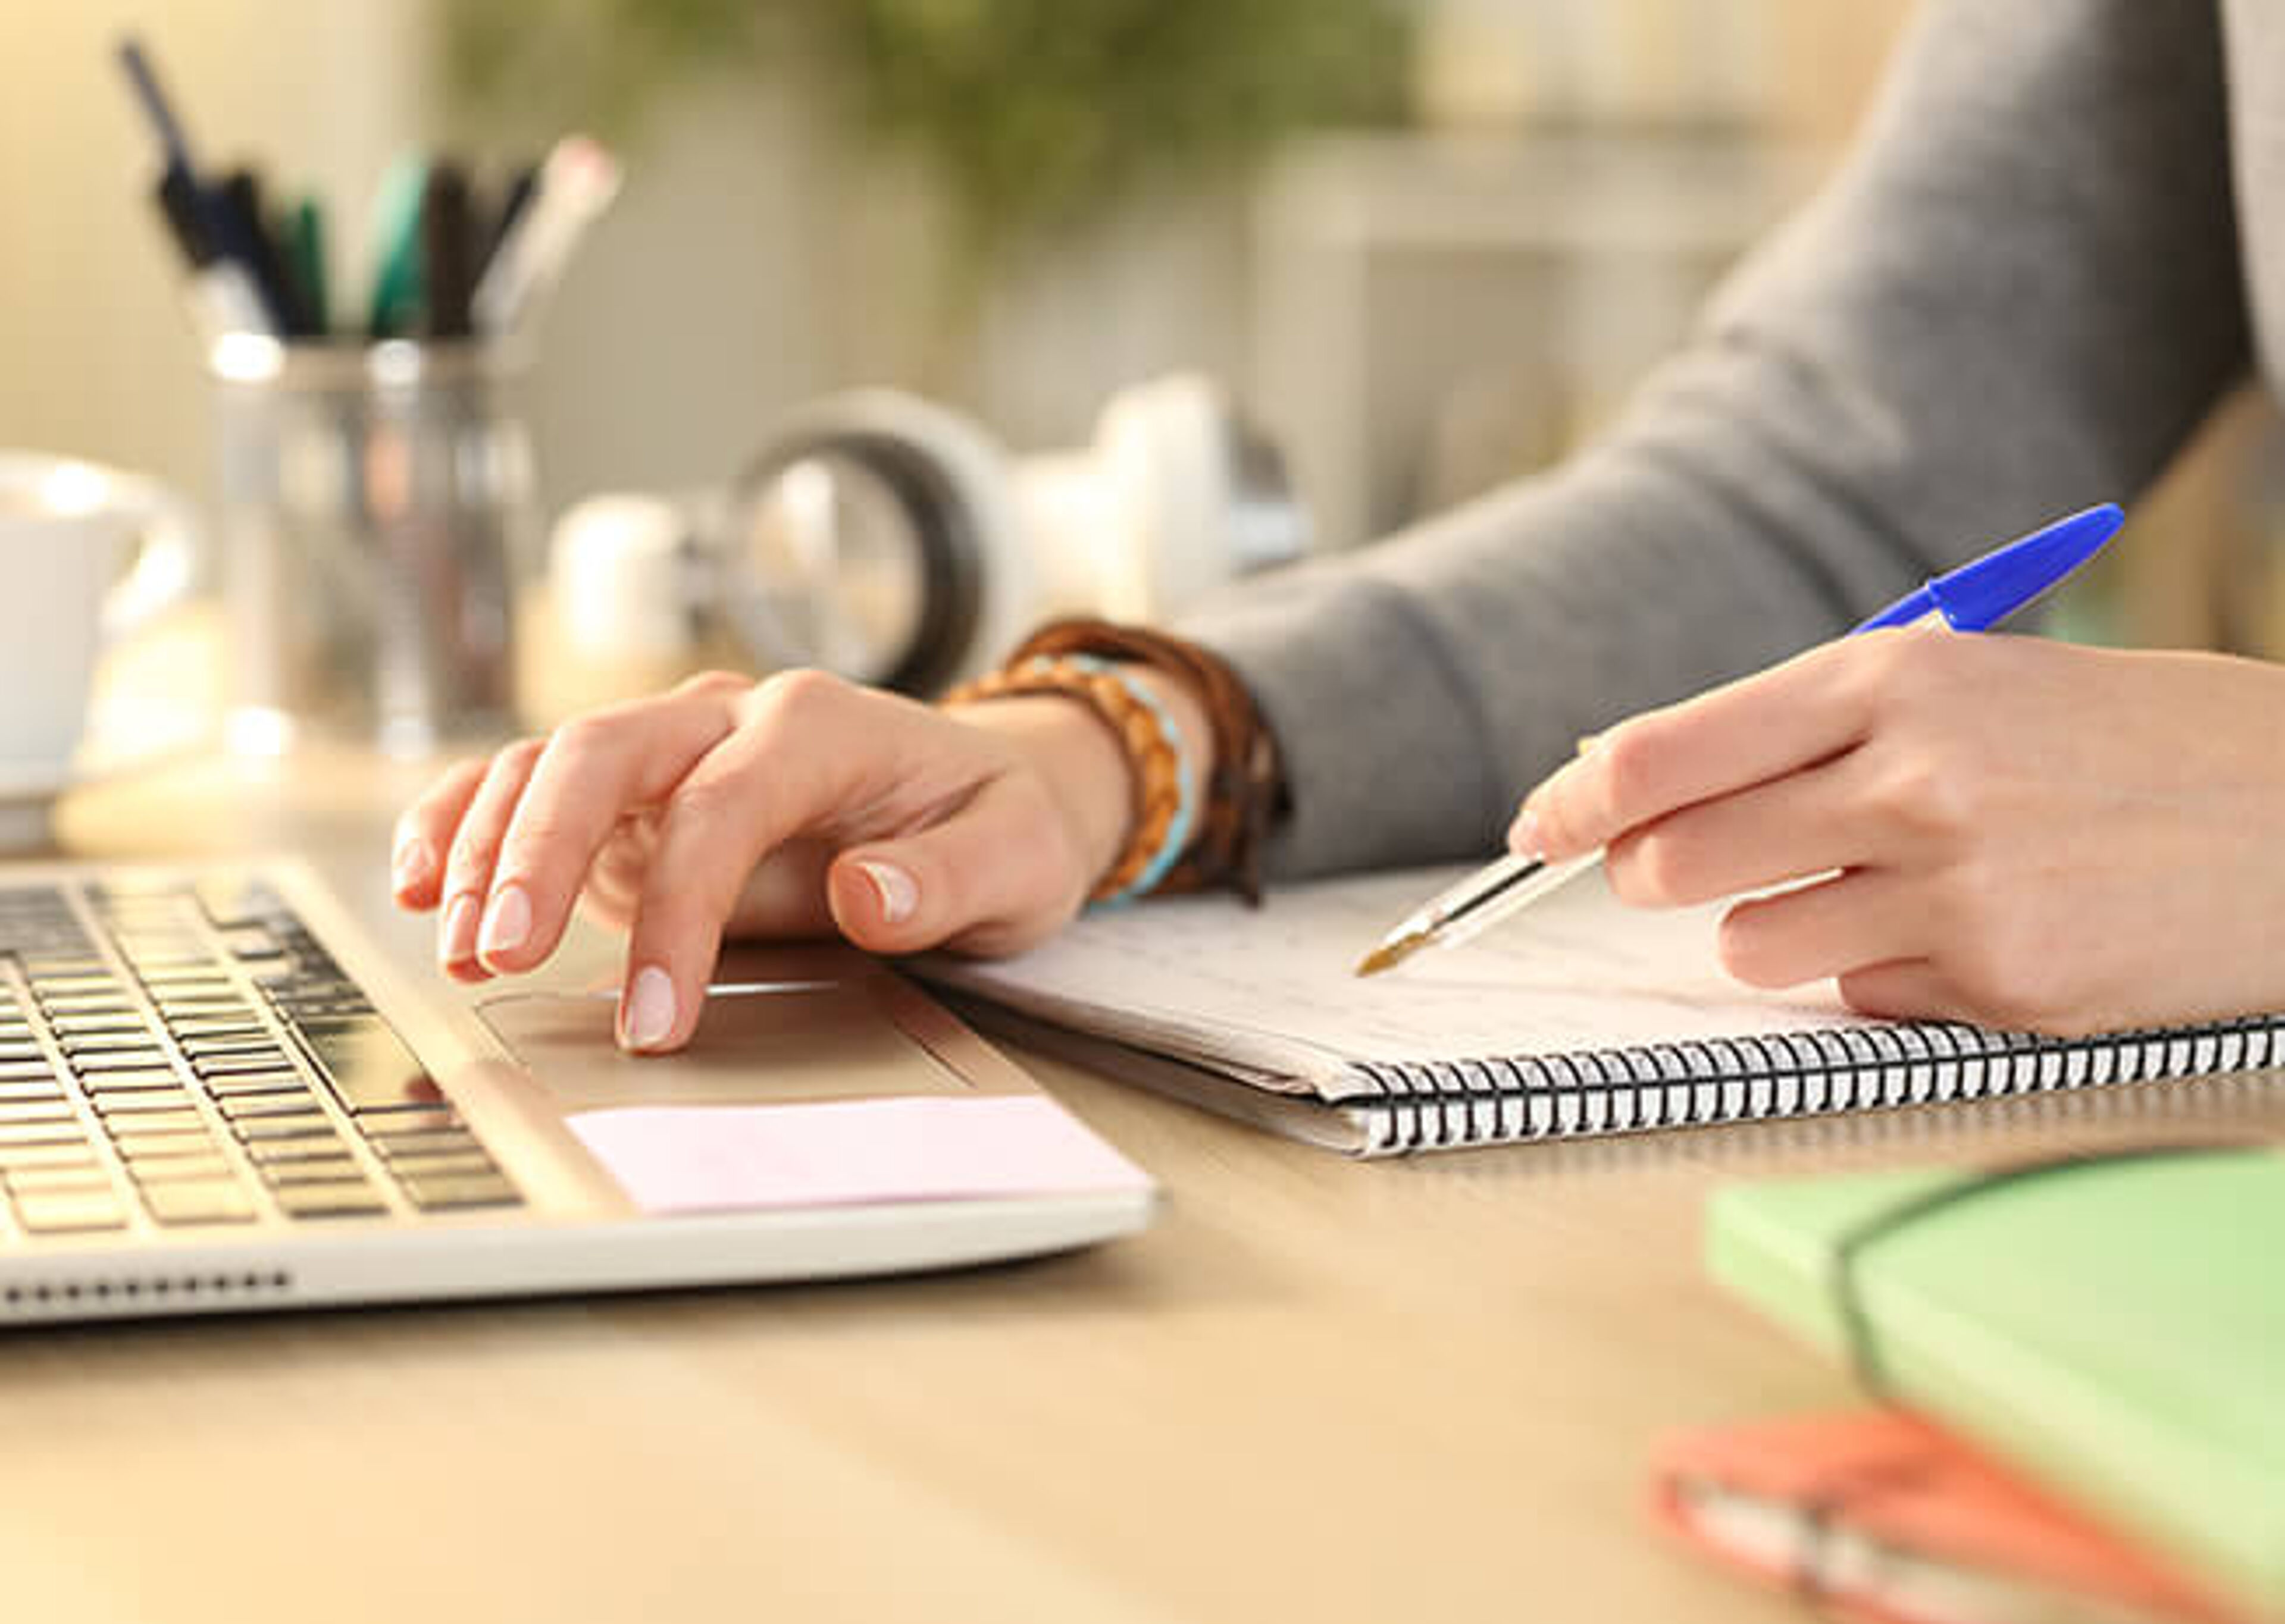 Primer pla de les mans d'una persona treballant, escrivint en un quadern al costat d'un portàtil en un escriptori ben organitzat.